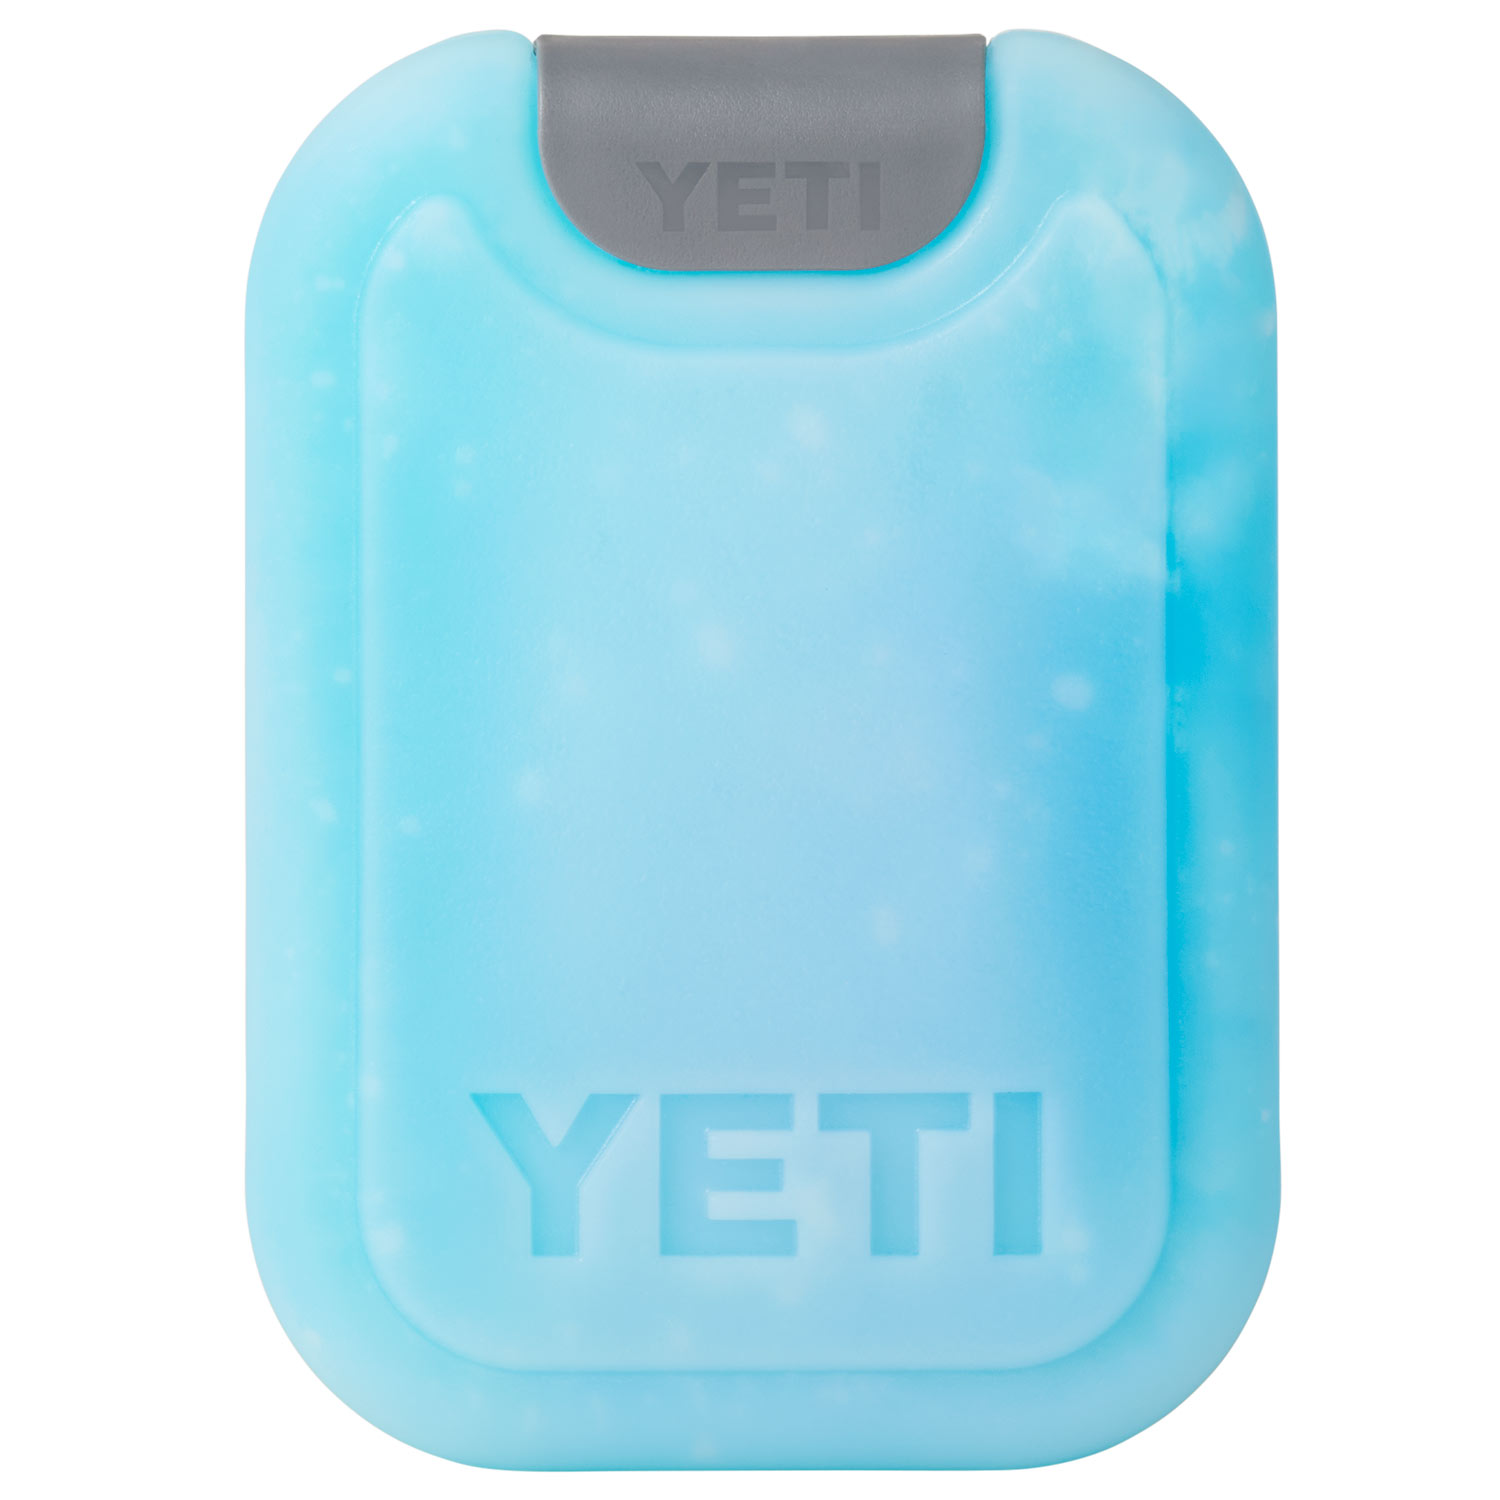 YETI Thin Ice Large, 10 x 7.25 x 0.9 - Runnings